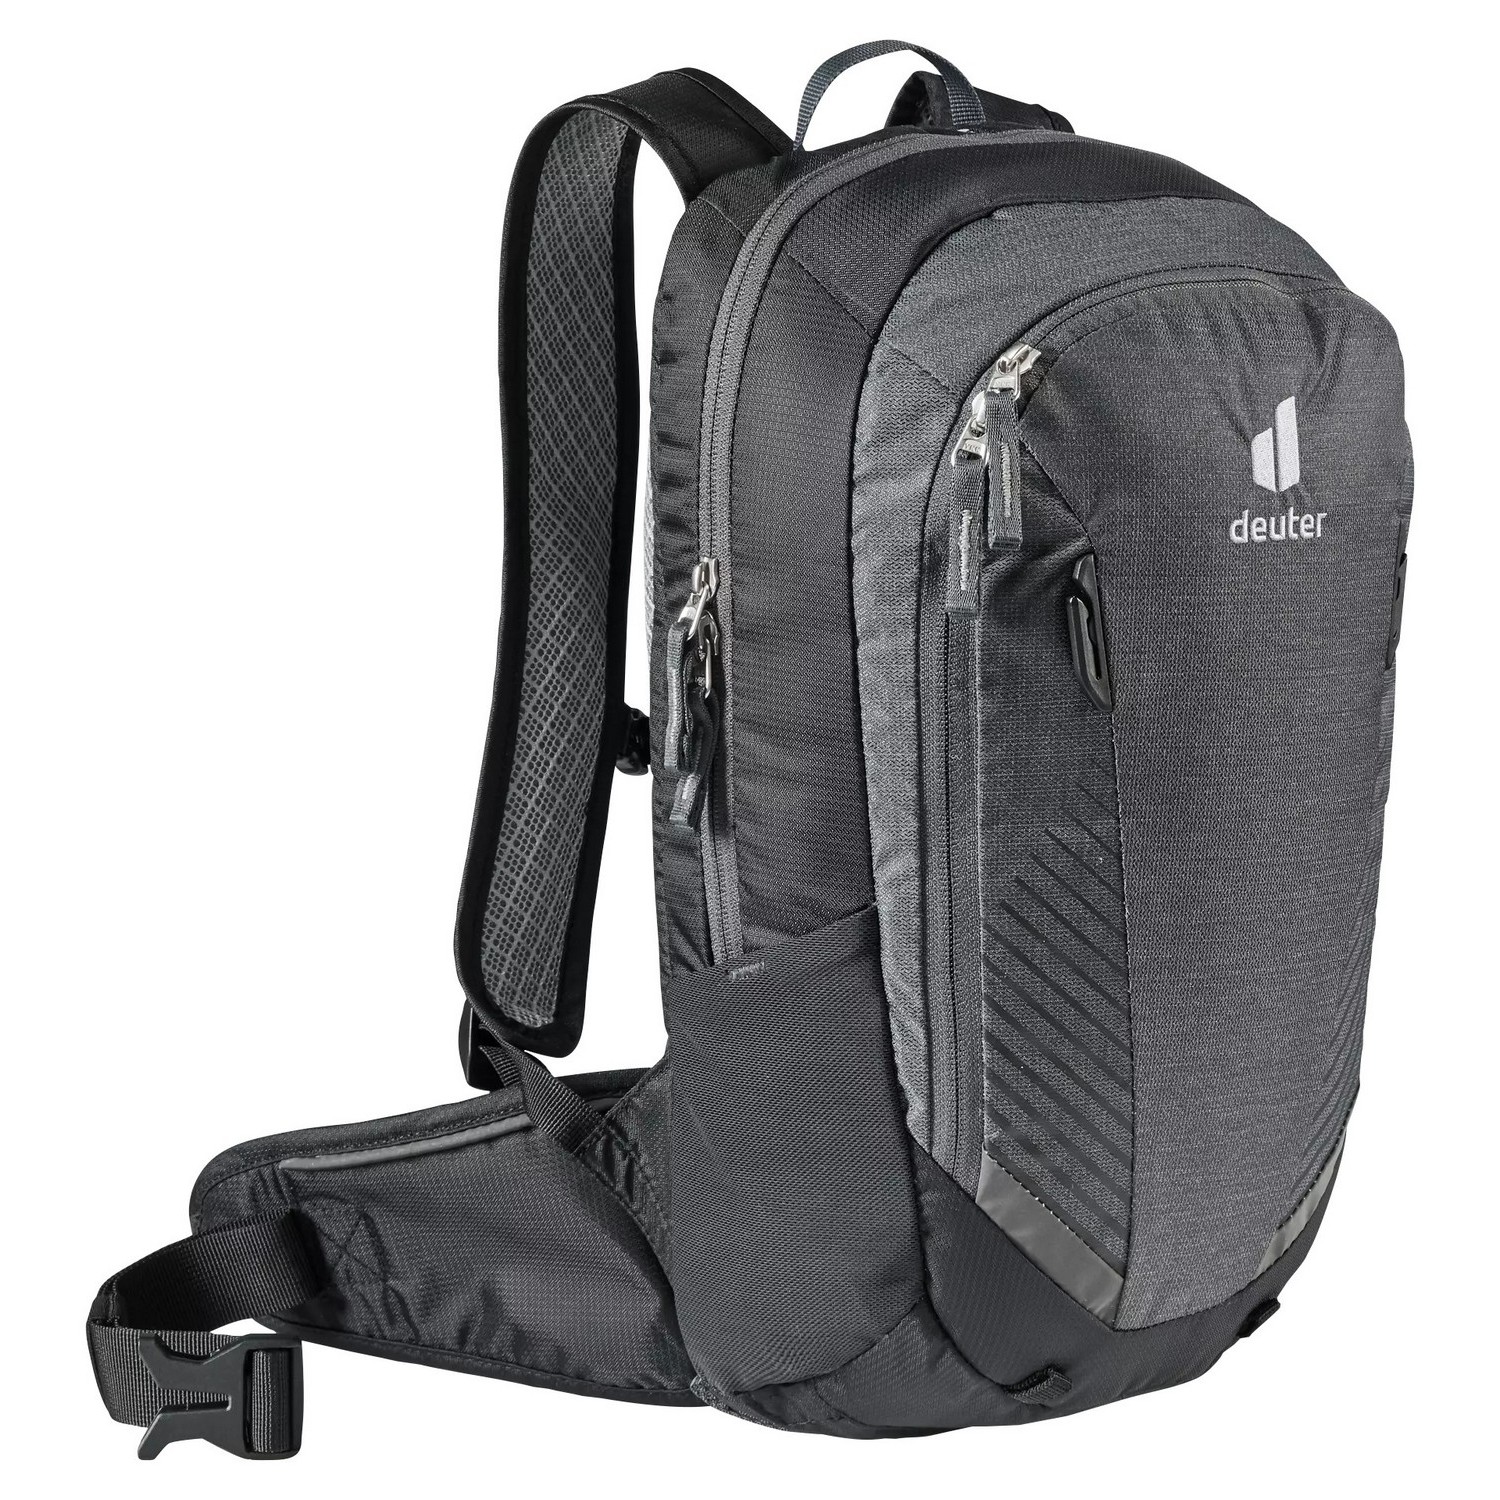 фото Deuter рюкзак deuter compact 8 jr, цвет серебристый-черный